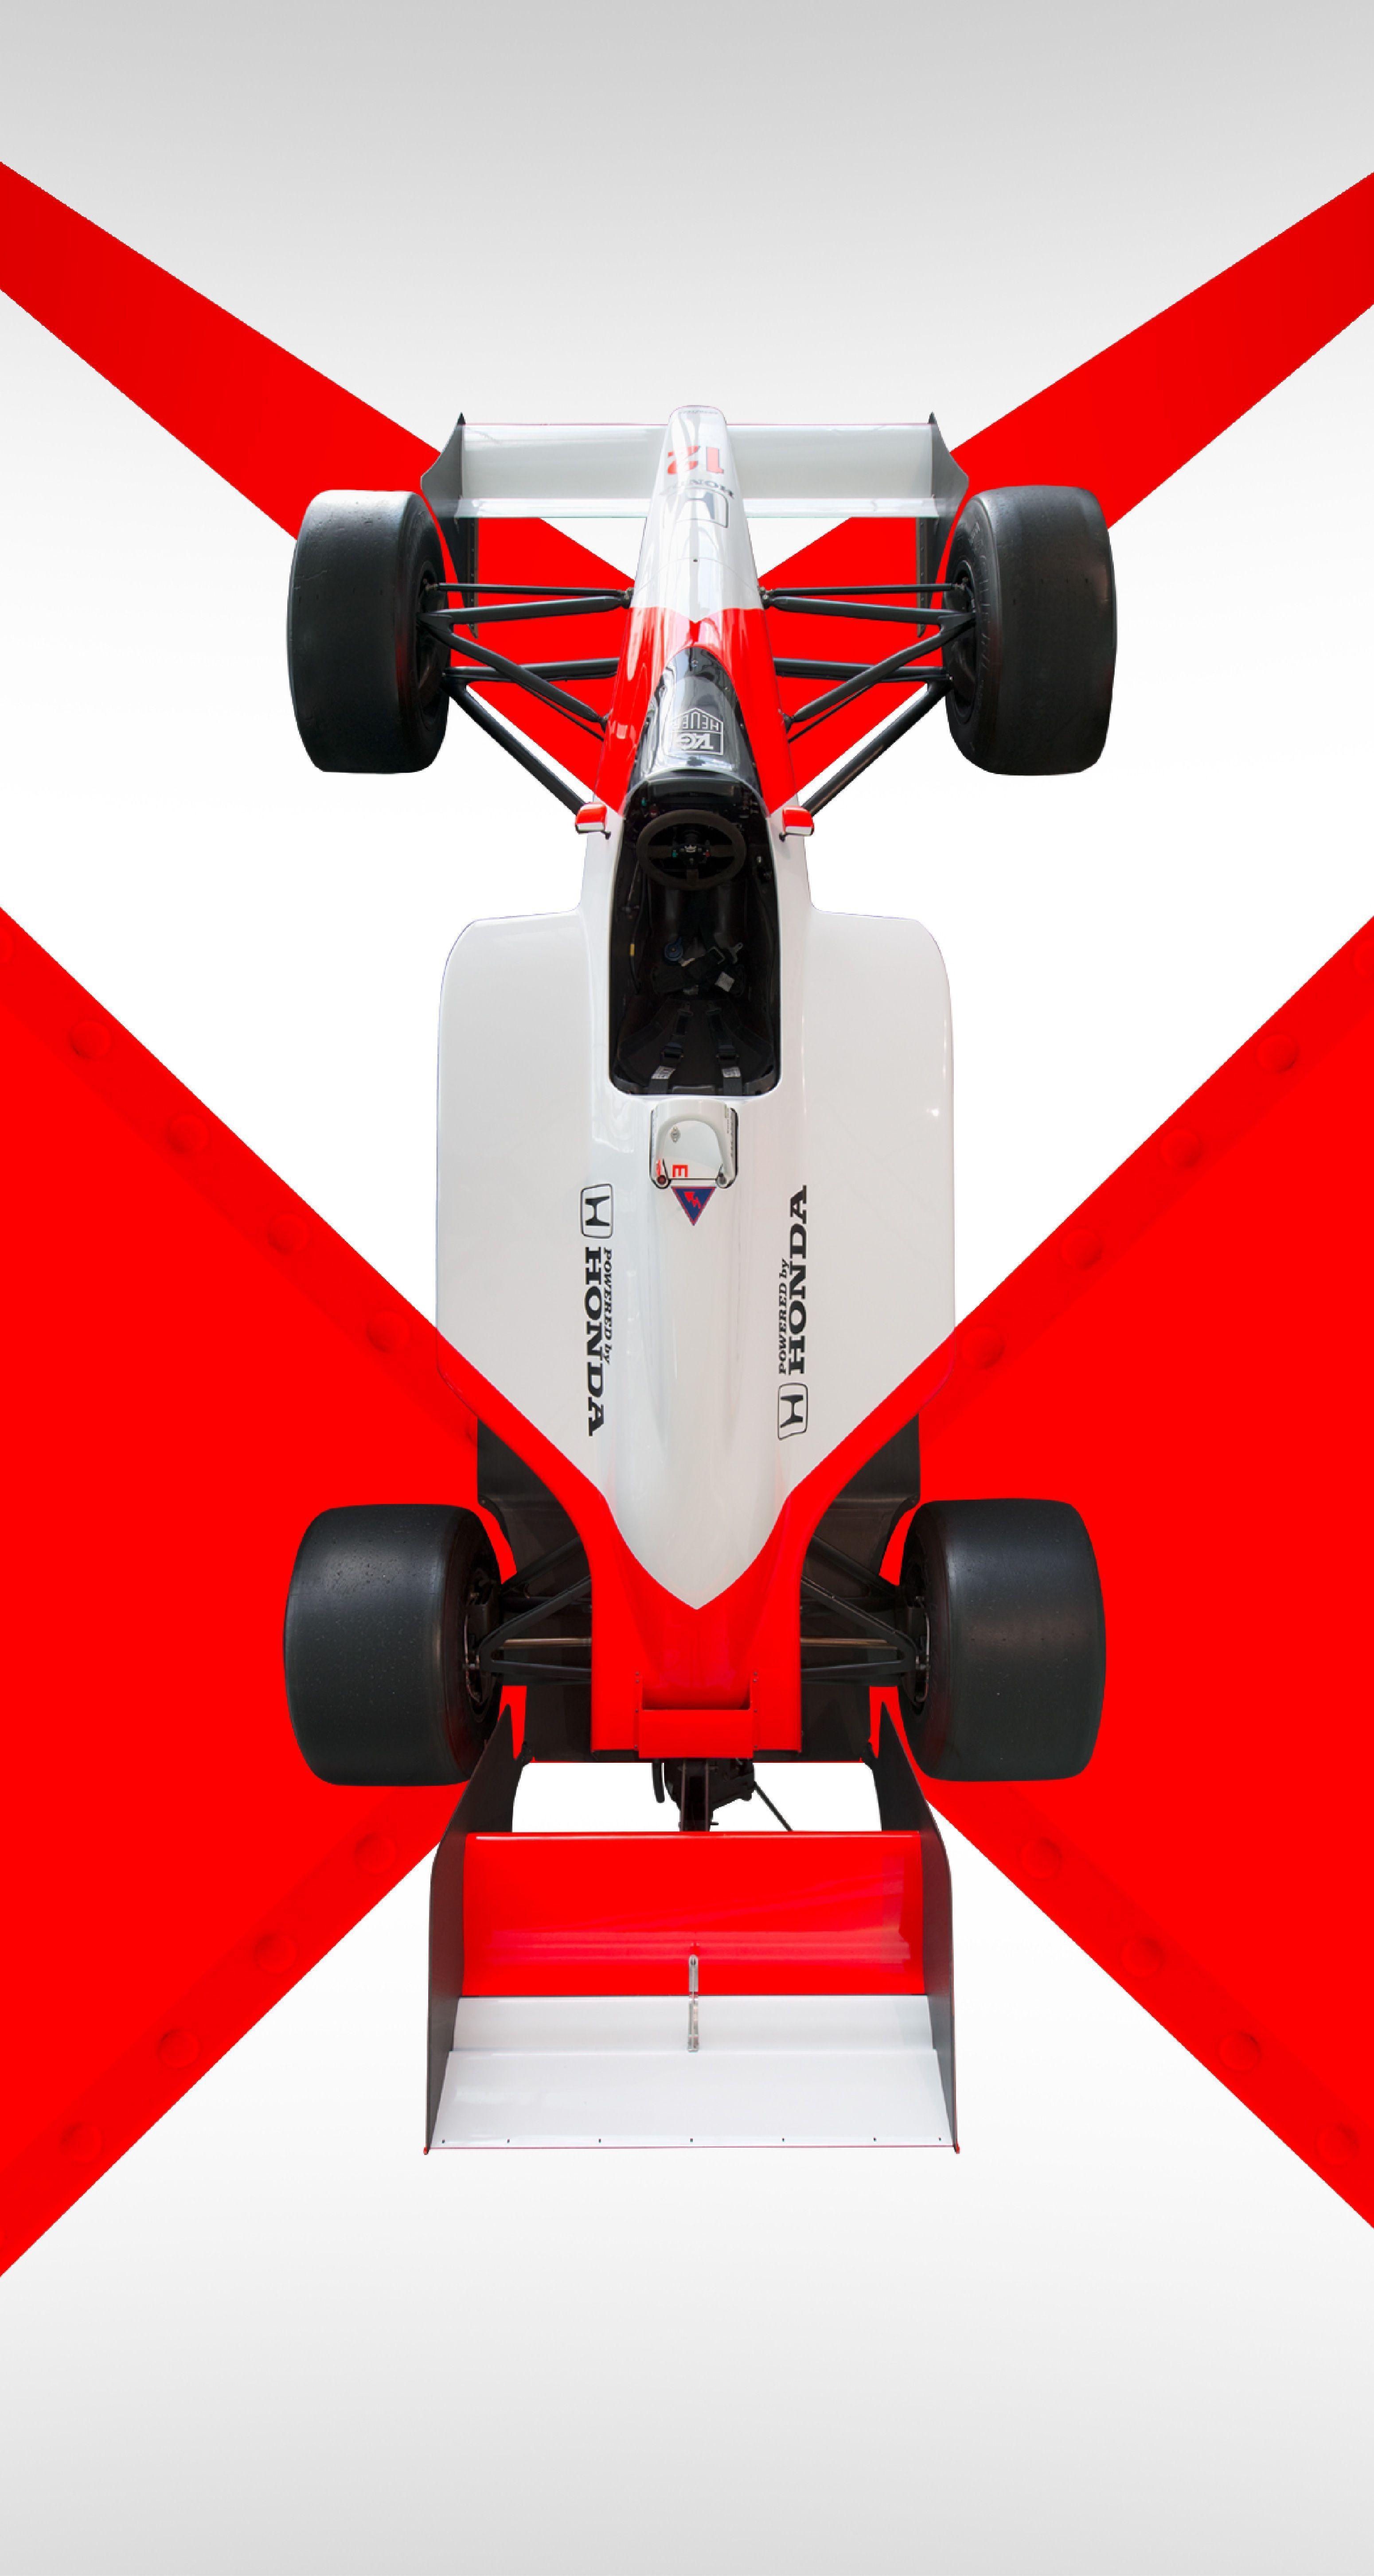 McLaren Formula 1